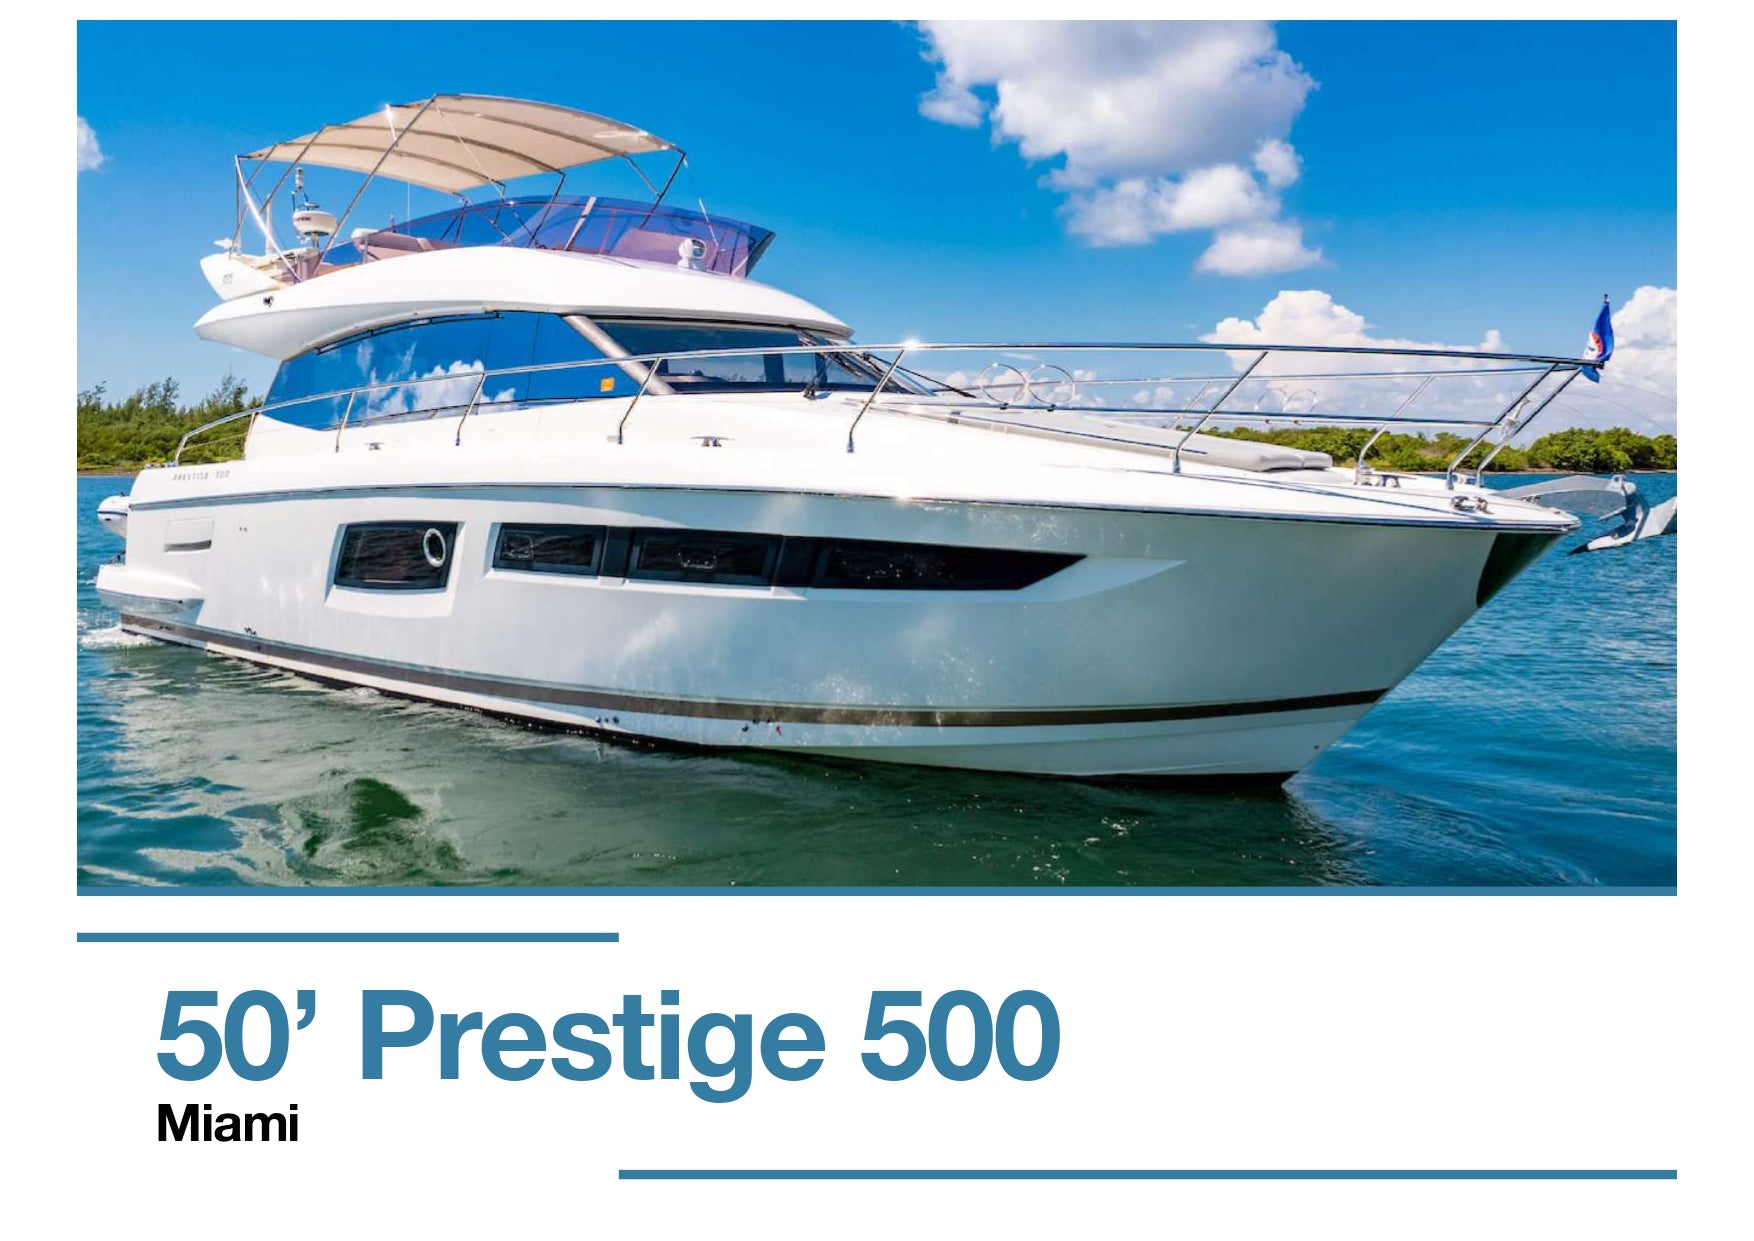 50’ Prestige 500